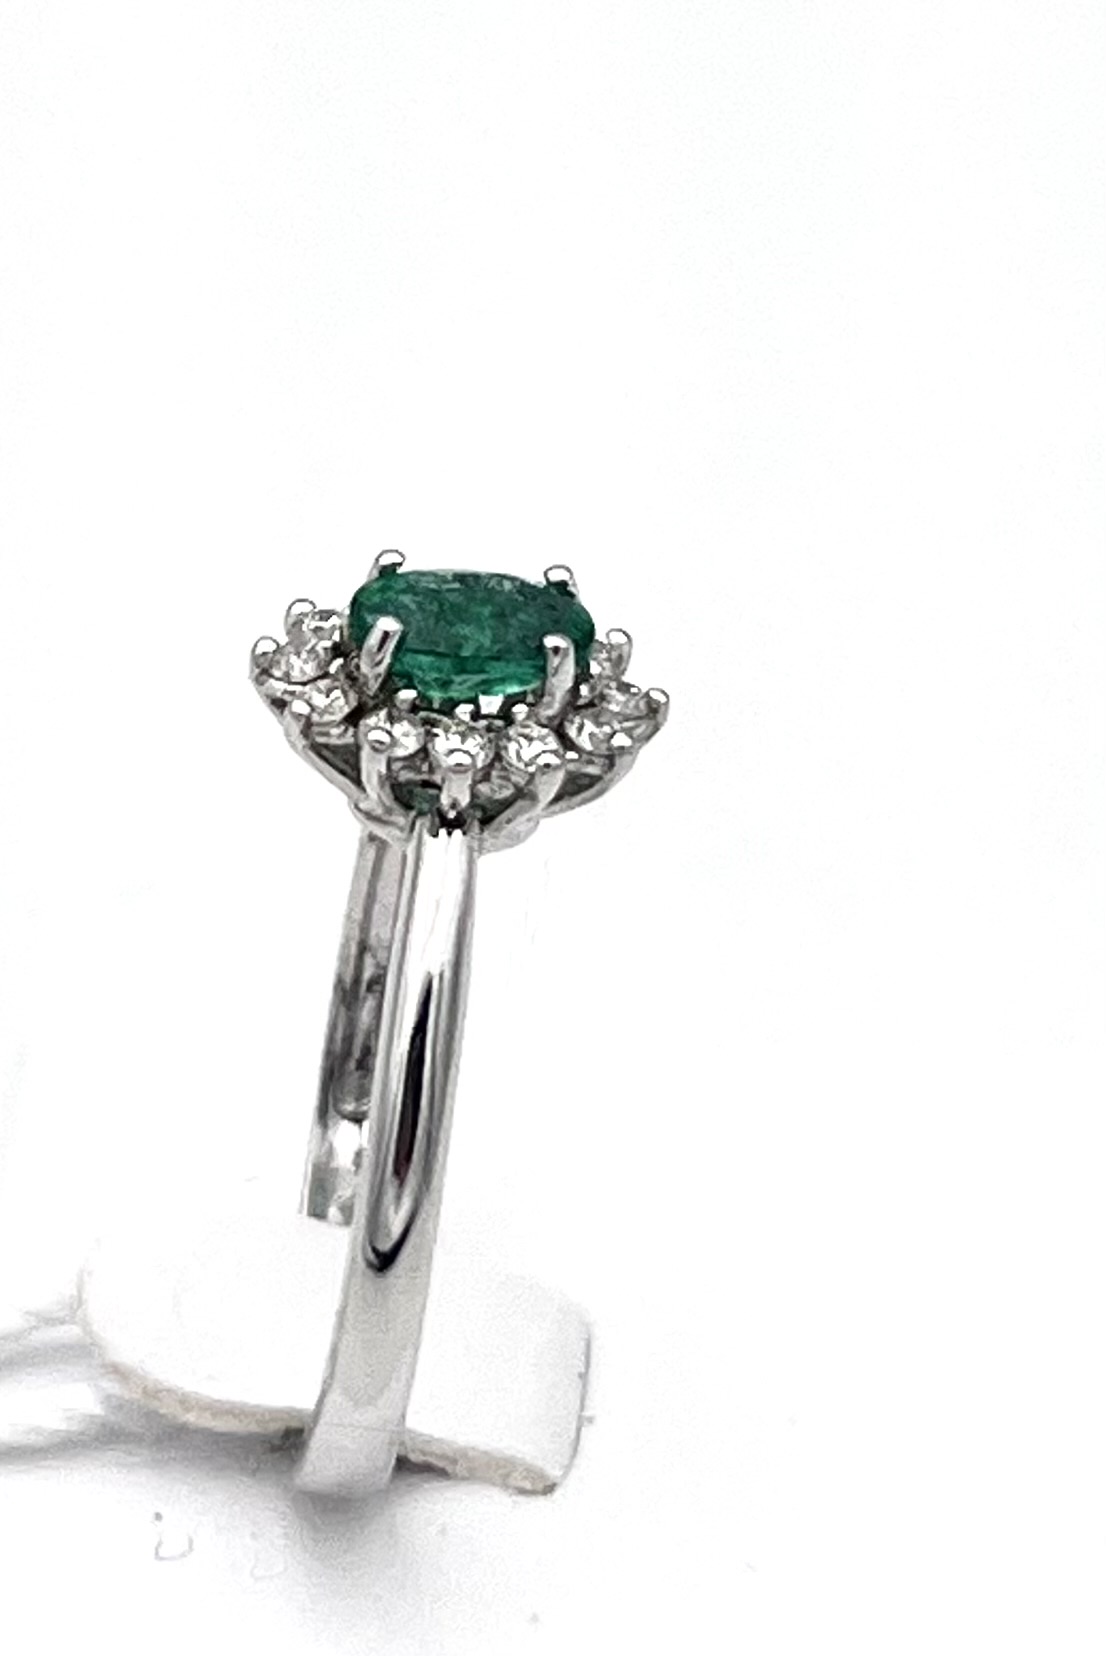 Anello smeraldo diamanti oro 750%  BON TON art.AN1745-4